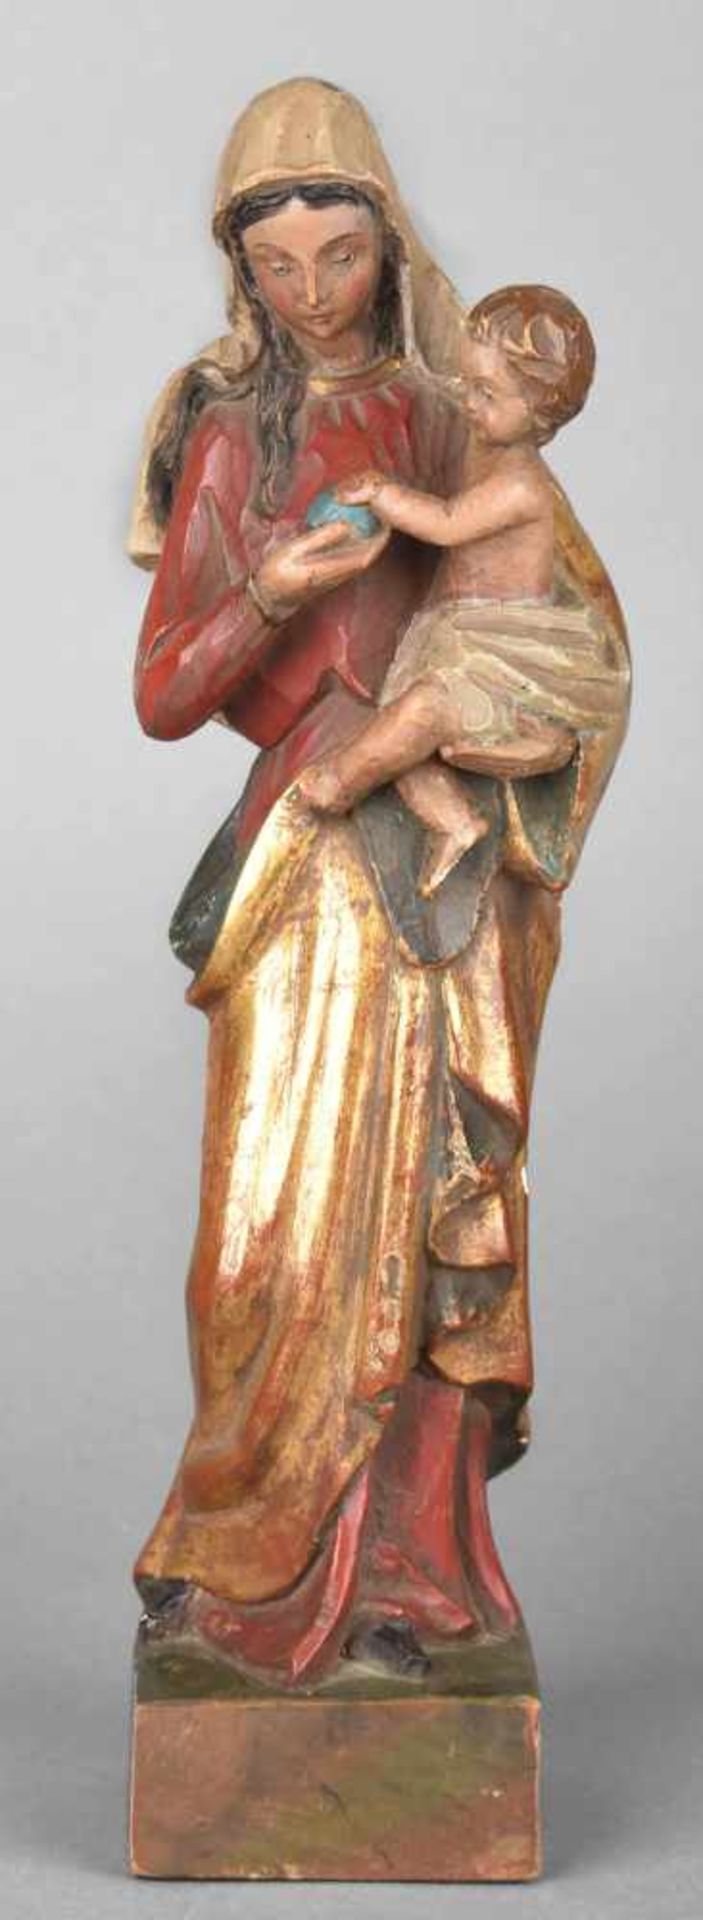 Madonnenplastik Holz, vollplastisch geschnitzt und farbig gefasst, Madonna mit Christuskind, H ca. - Bild 2 aus 2